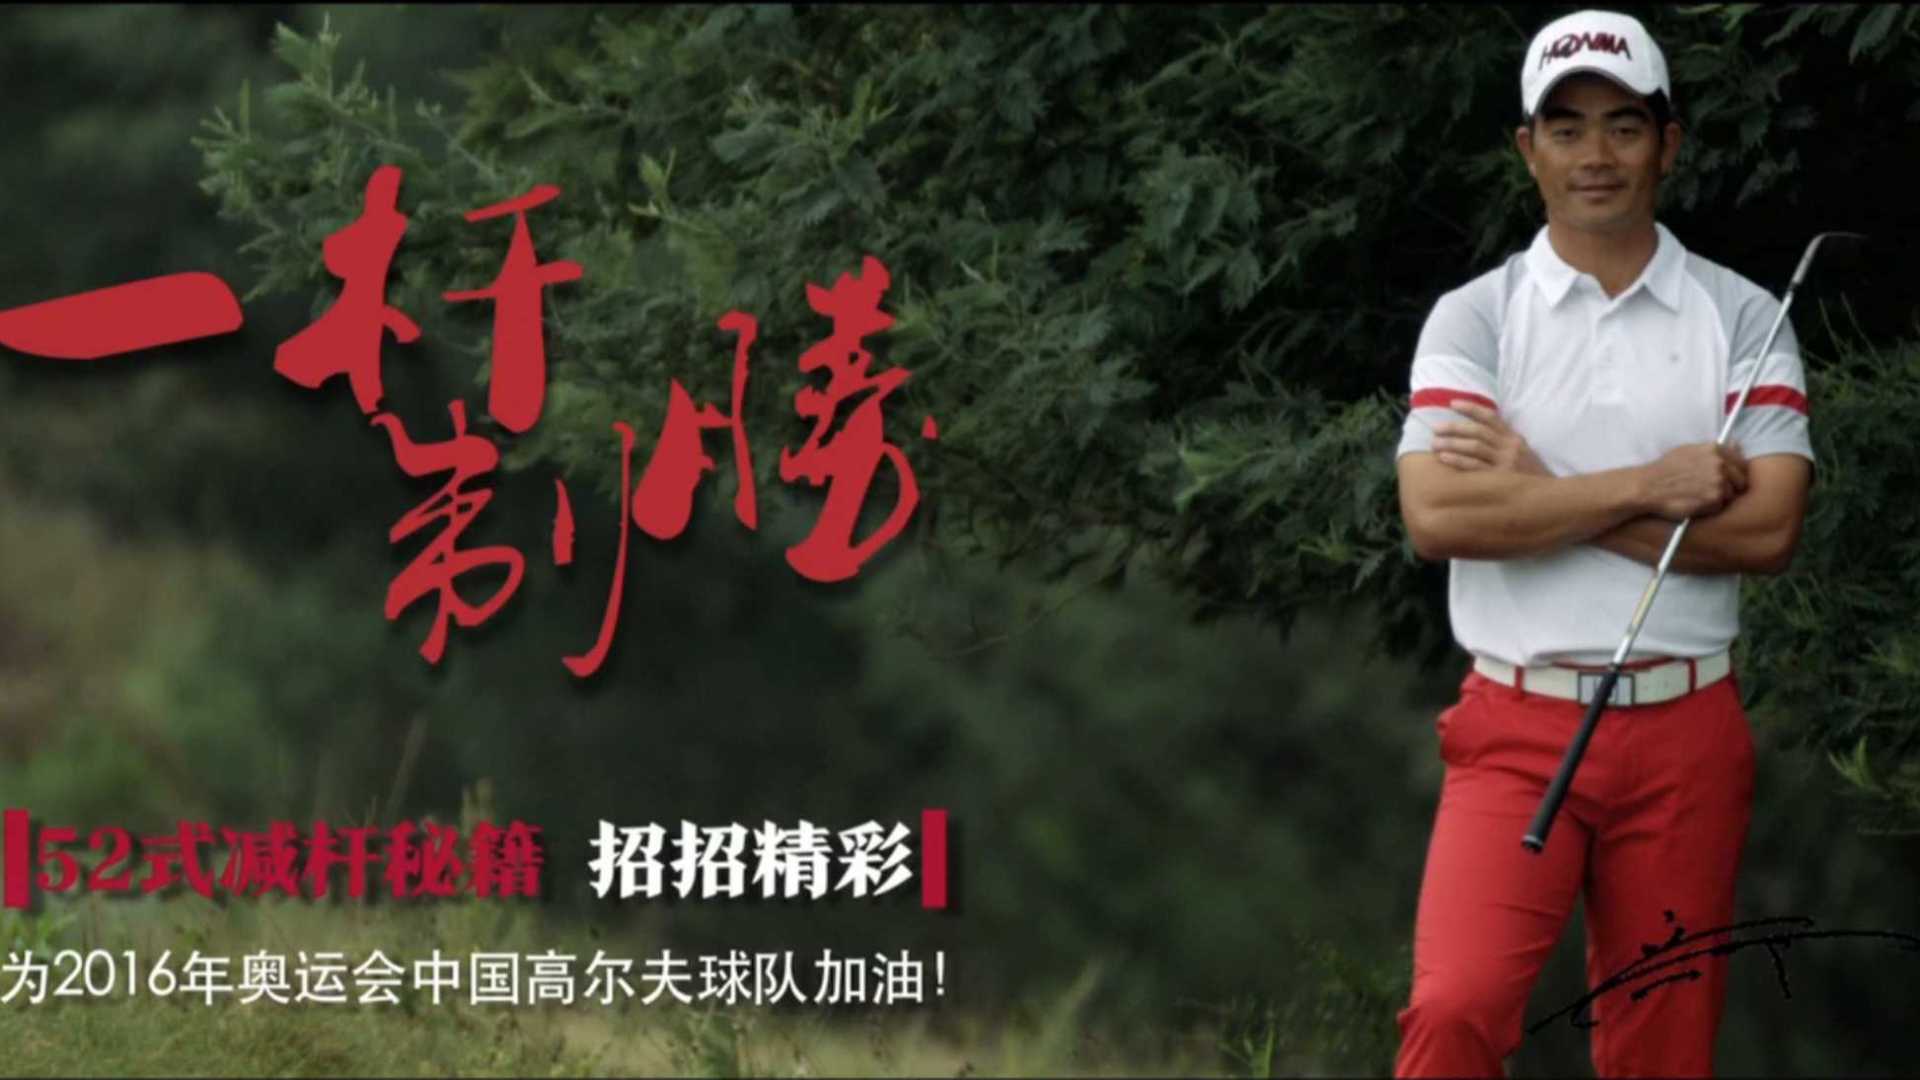 《一杆制胜》广告  composed by 苗三川